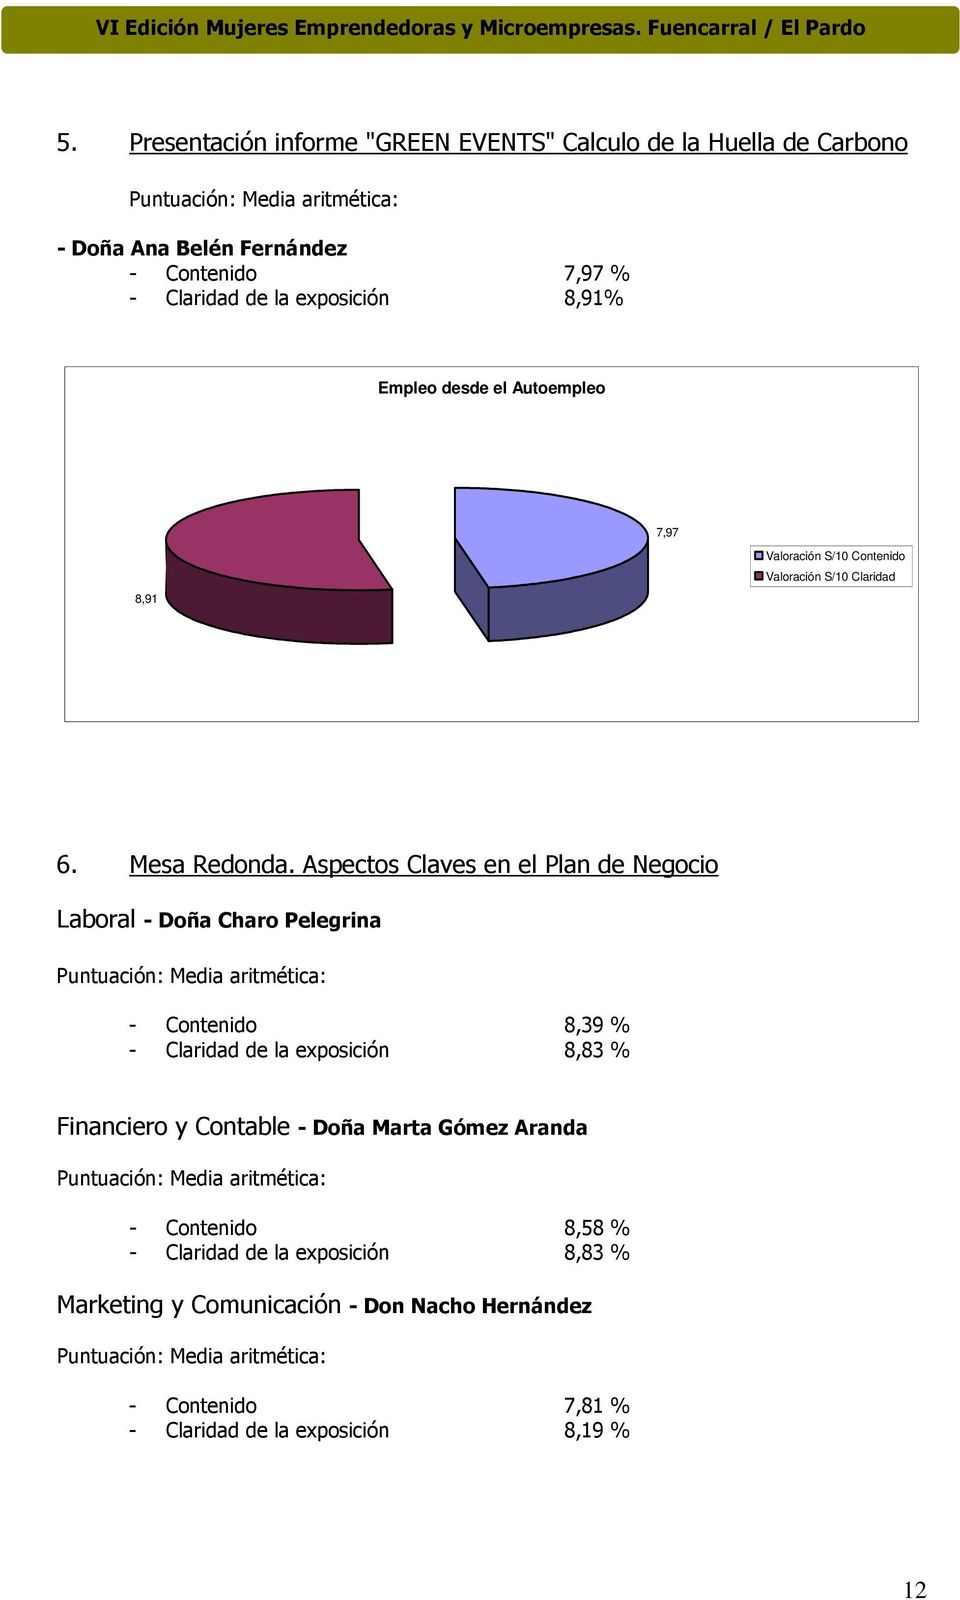 Aspectos Claves en el Plan de Negocio Laboral - Doña Charo Pelegrina - Contenido 8,39 % - Claridad de la exposición 8,83 % Financiero y Contable